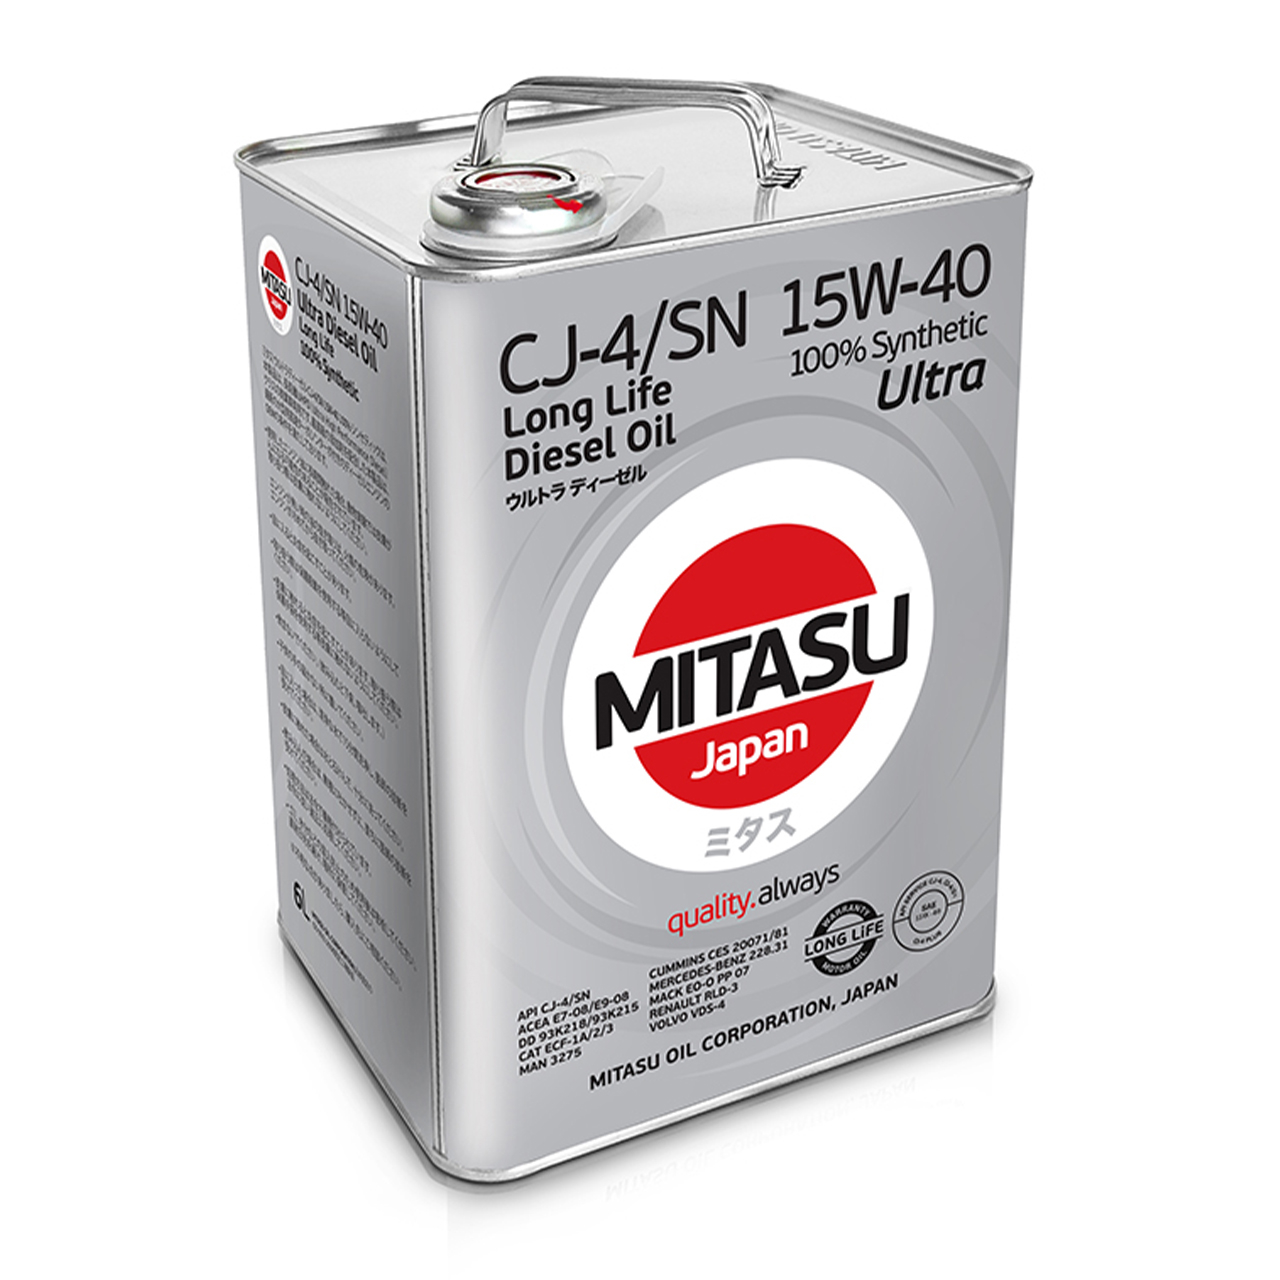 Купить запчасть MITASU - MJ2146 Масло моторное MITASU CJ-4/SN 15w40 6л синтетическое для дизельных двигателей MJ214 (1/4) Япония